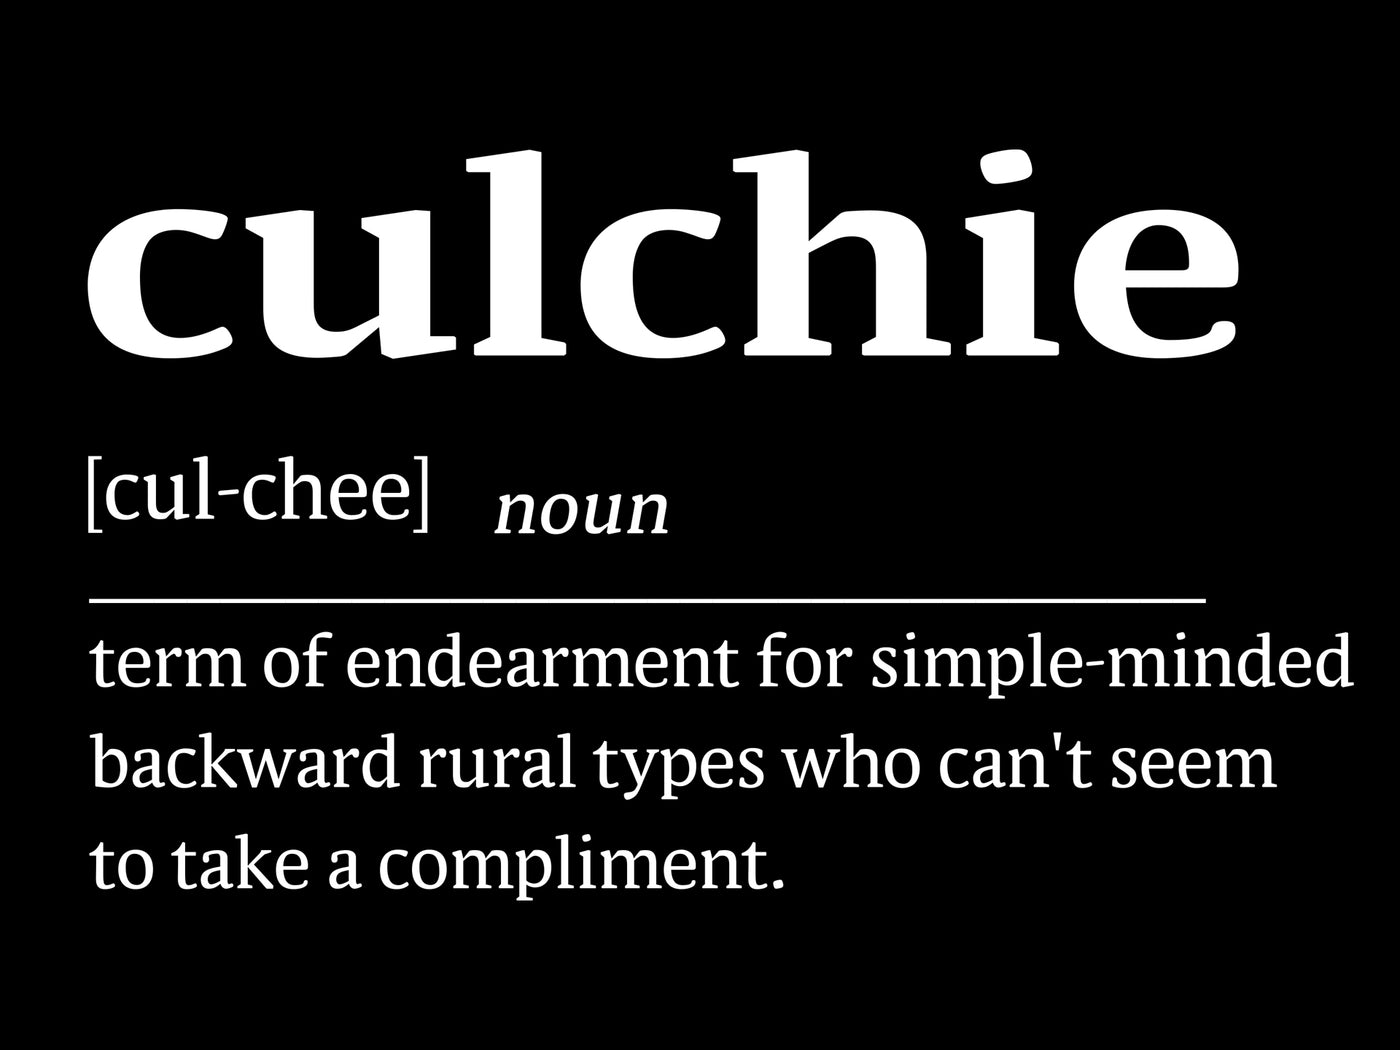 Culchie - Premium WWN T-shirt